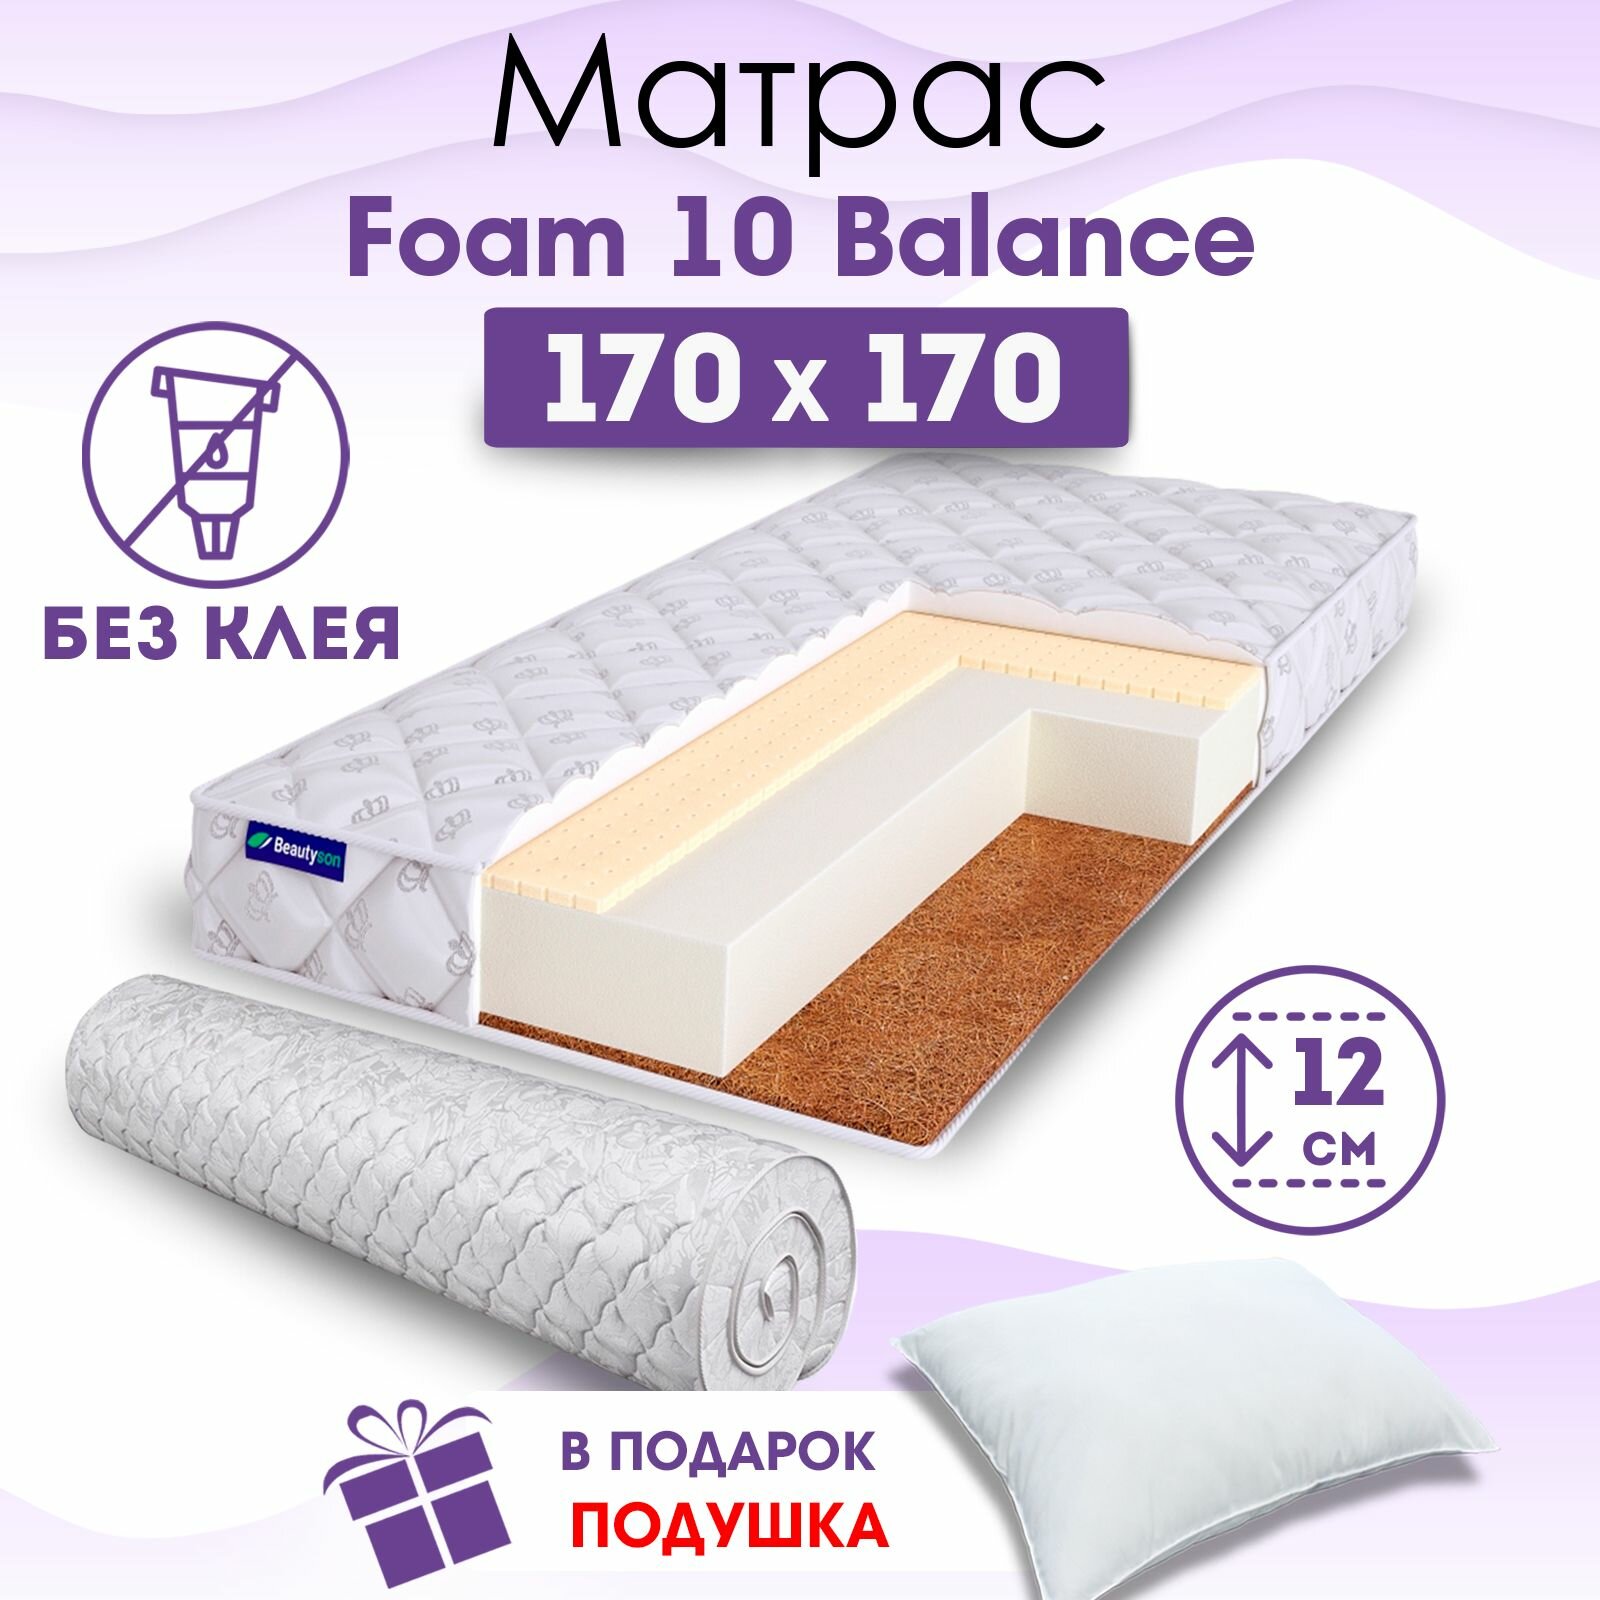 Ортопедический матрас Beautyson Foam 10 Balance без клея, 170х170, 12 см, беспружинный, двухспальный, на кровать, для дивана, средний, не высокий